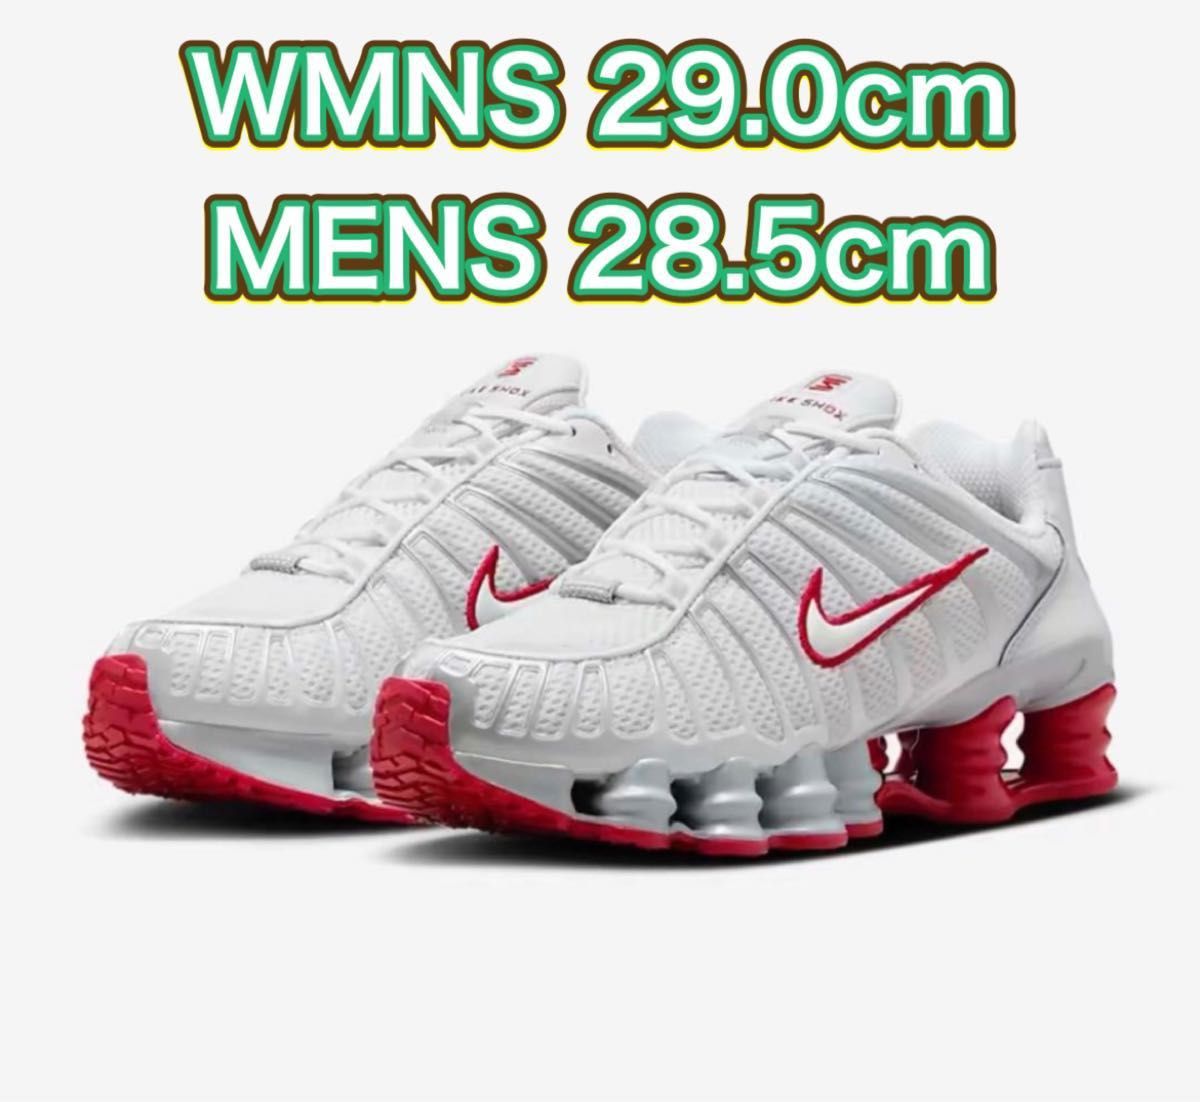 【新品未使用】Nike WMNS Shox TL Platinum Tint 29.0cm 